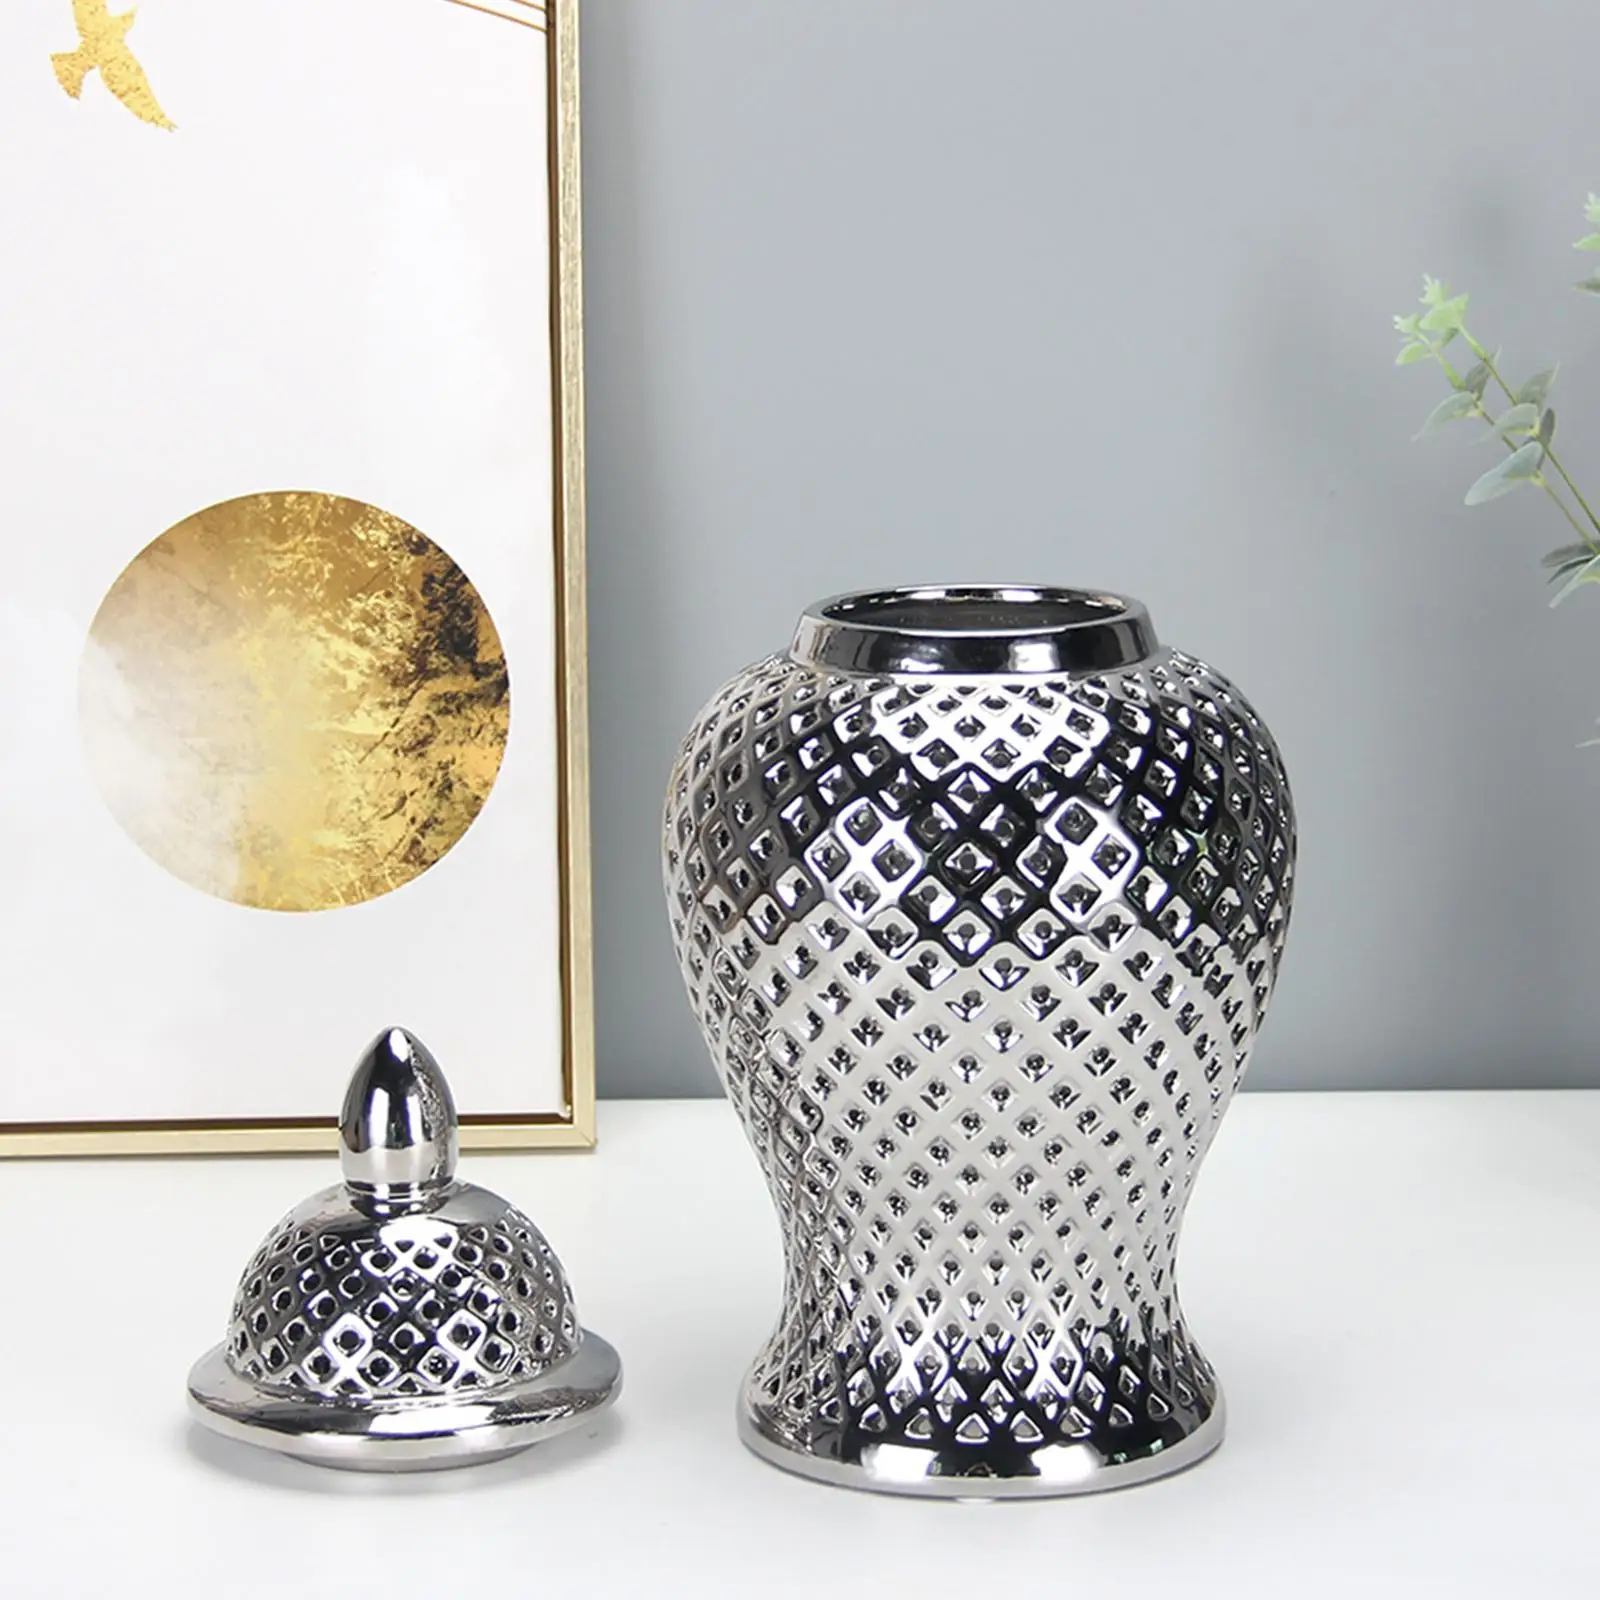 Ceramic Ginger Jar Table Elegant Storage Decorative Vase Floral Arrangement Vase for Bedroom Living Room Party Home Decor Office